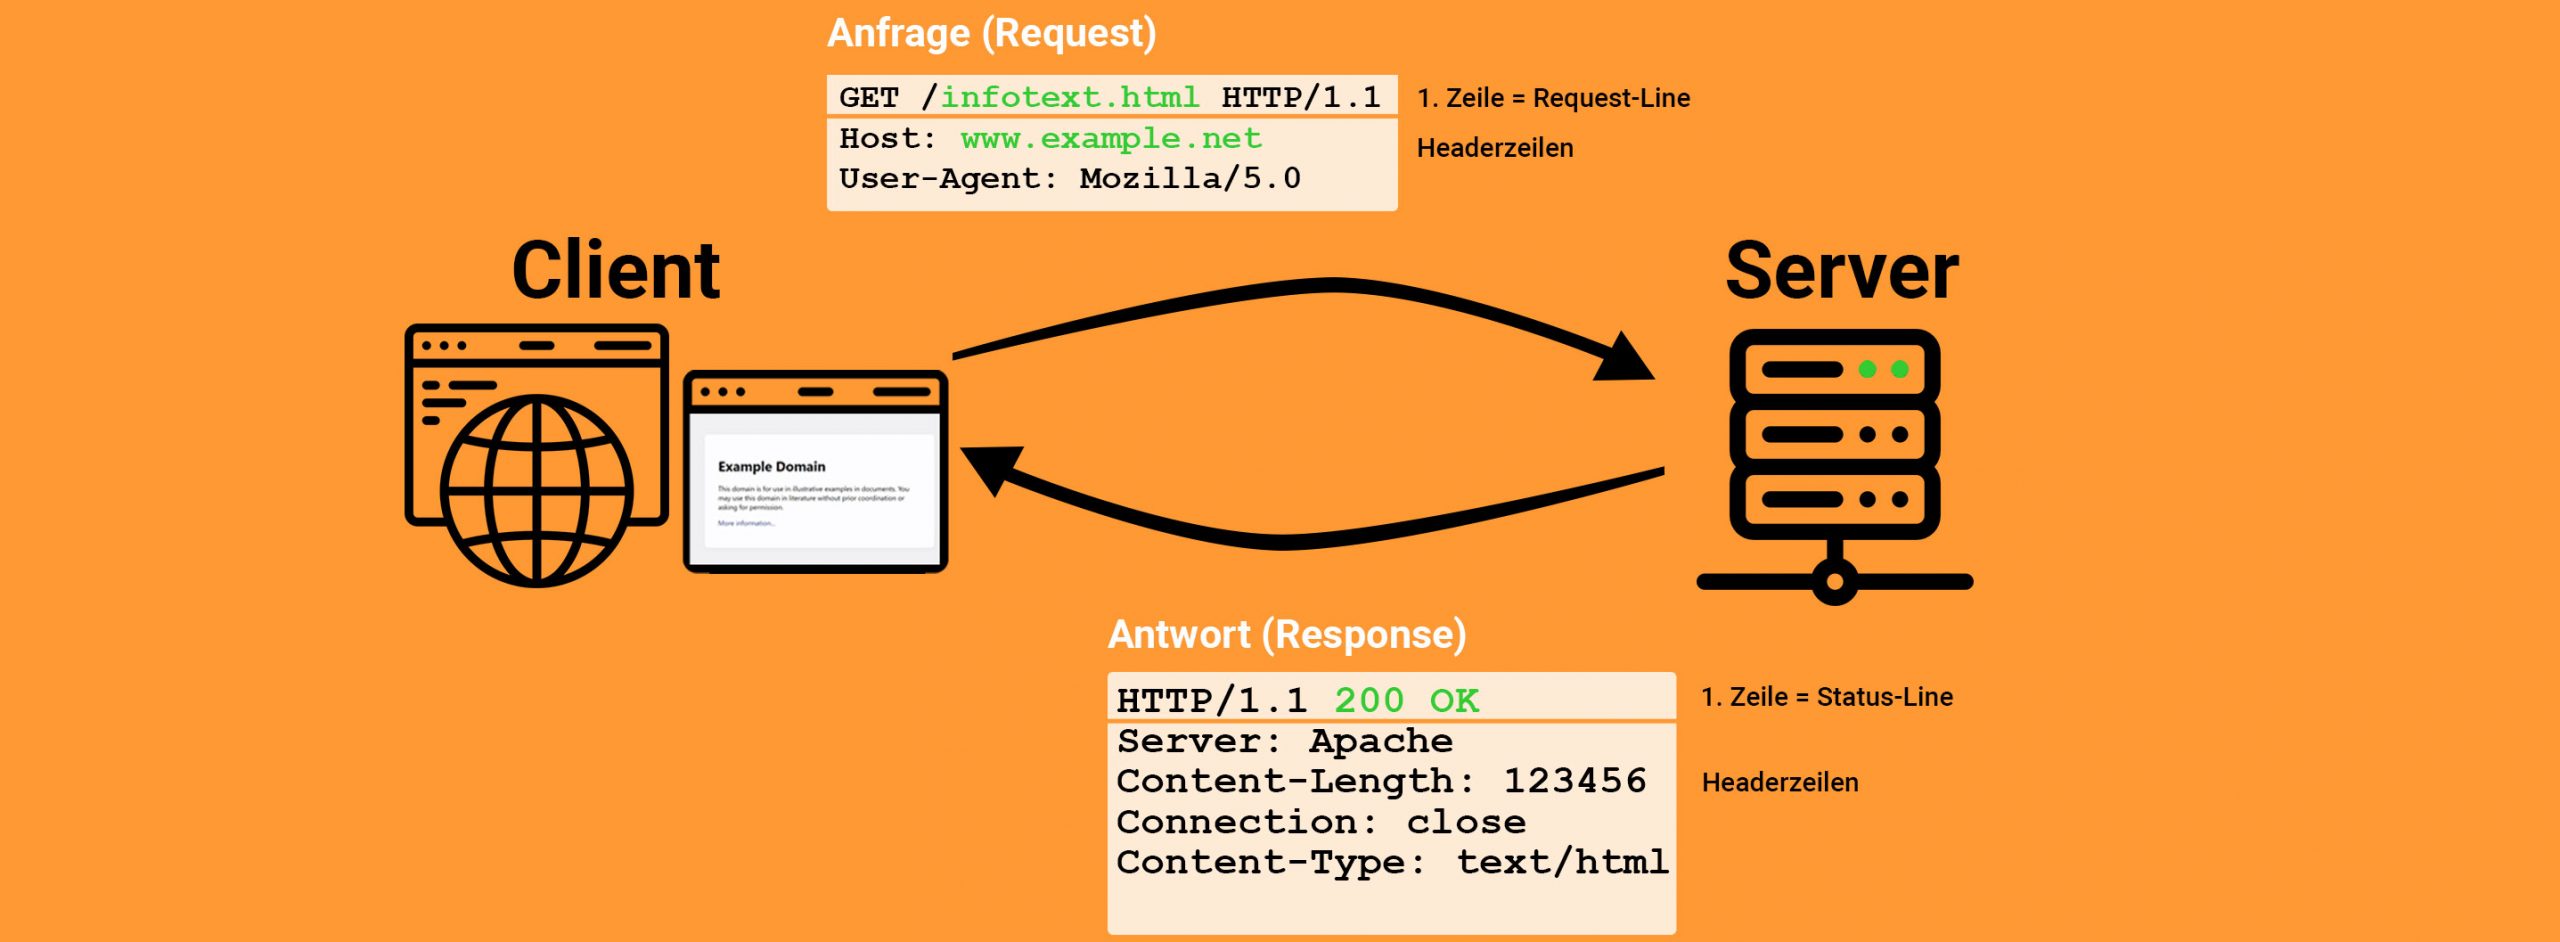 Abbildung: Client stellt GET-Anfrage und Server antwortet mit HTTP-Response